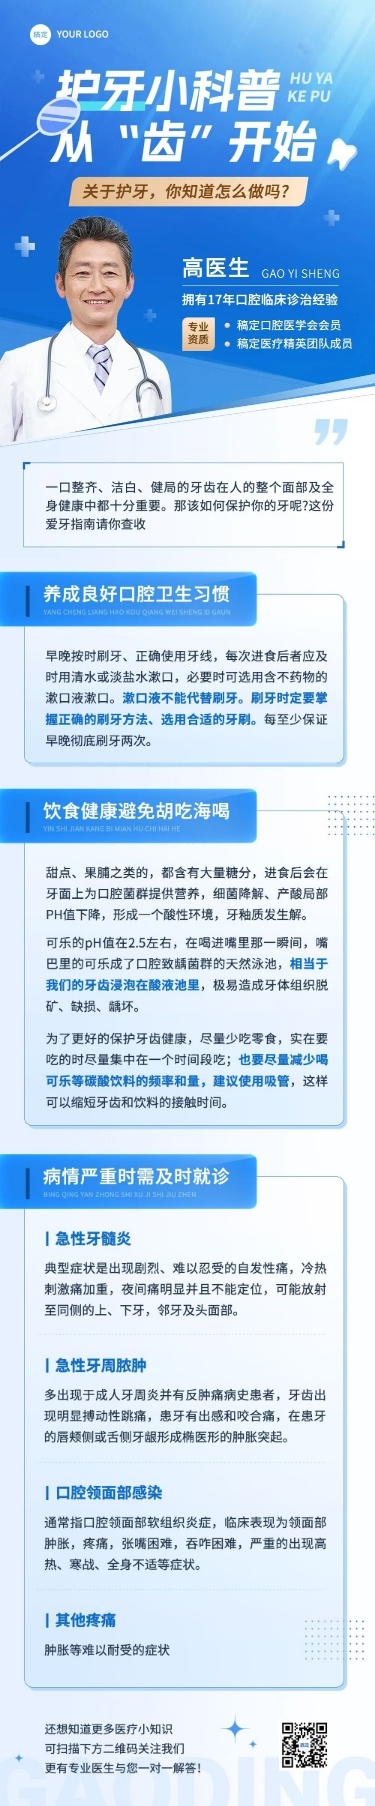 医疗知识科普宣传推广文章长图